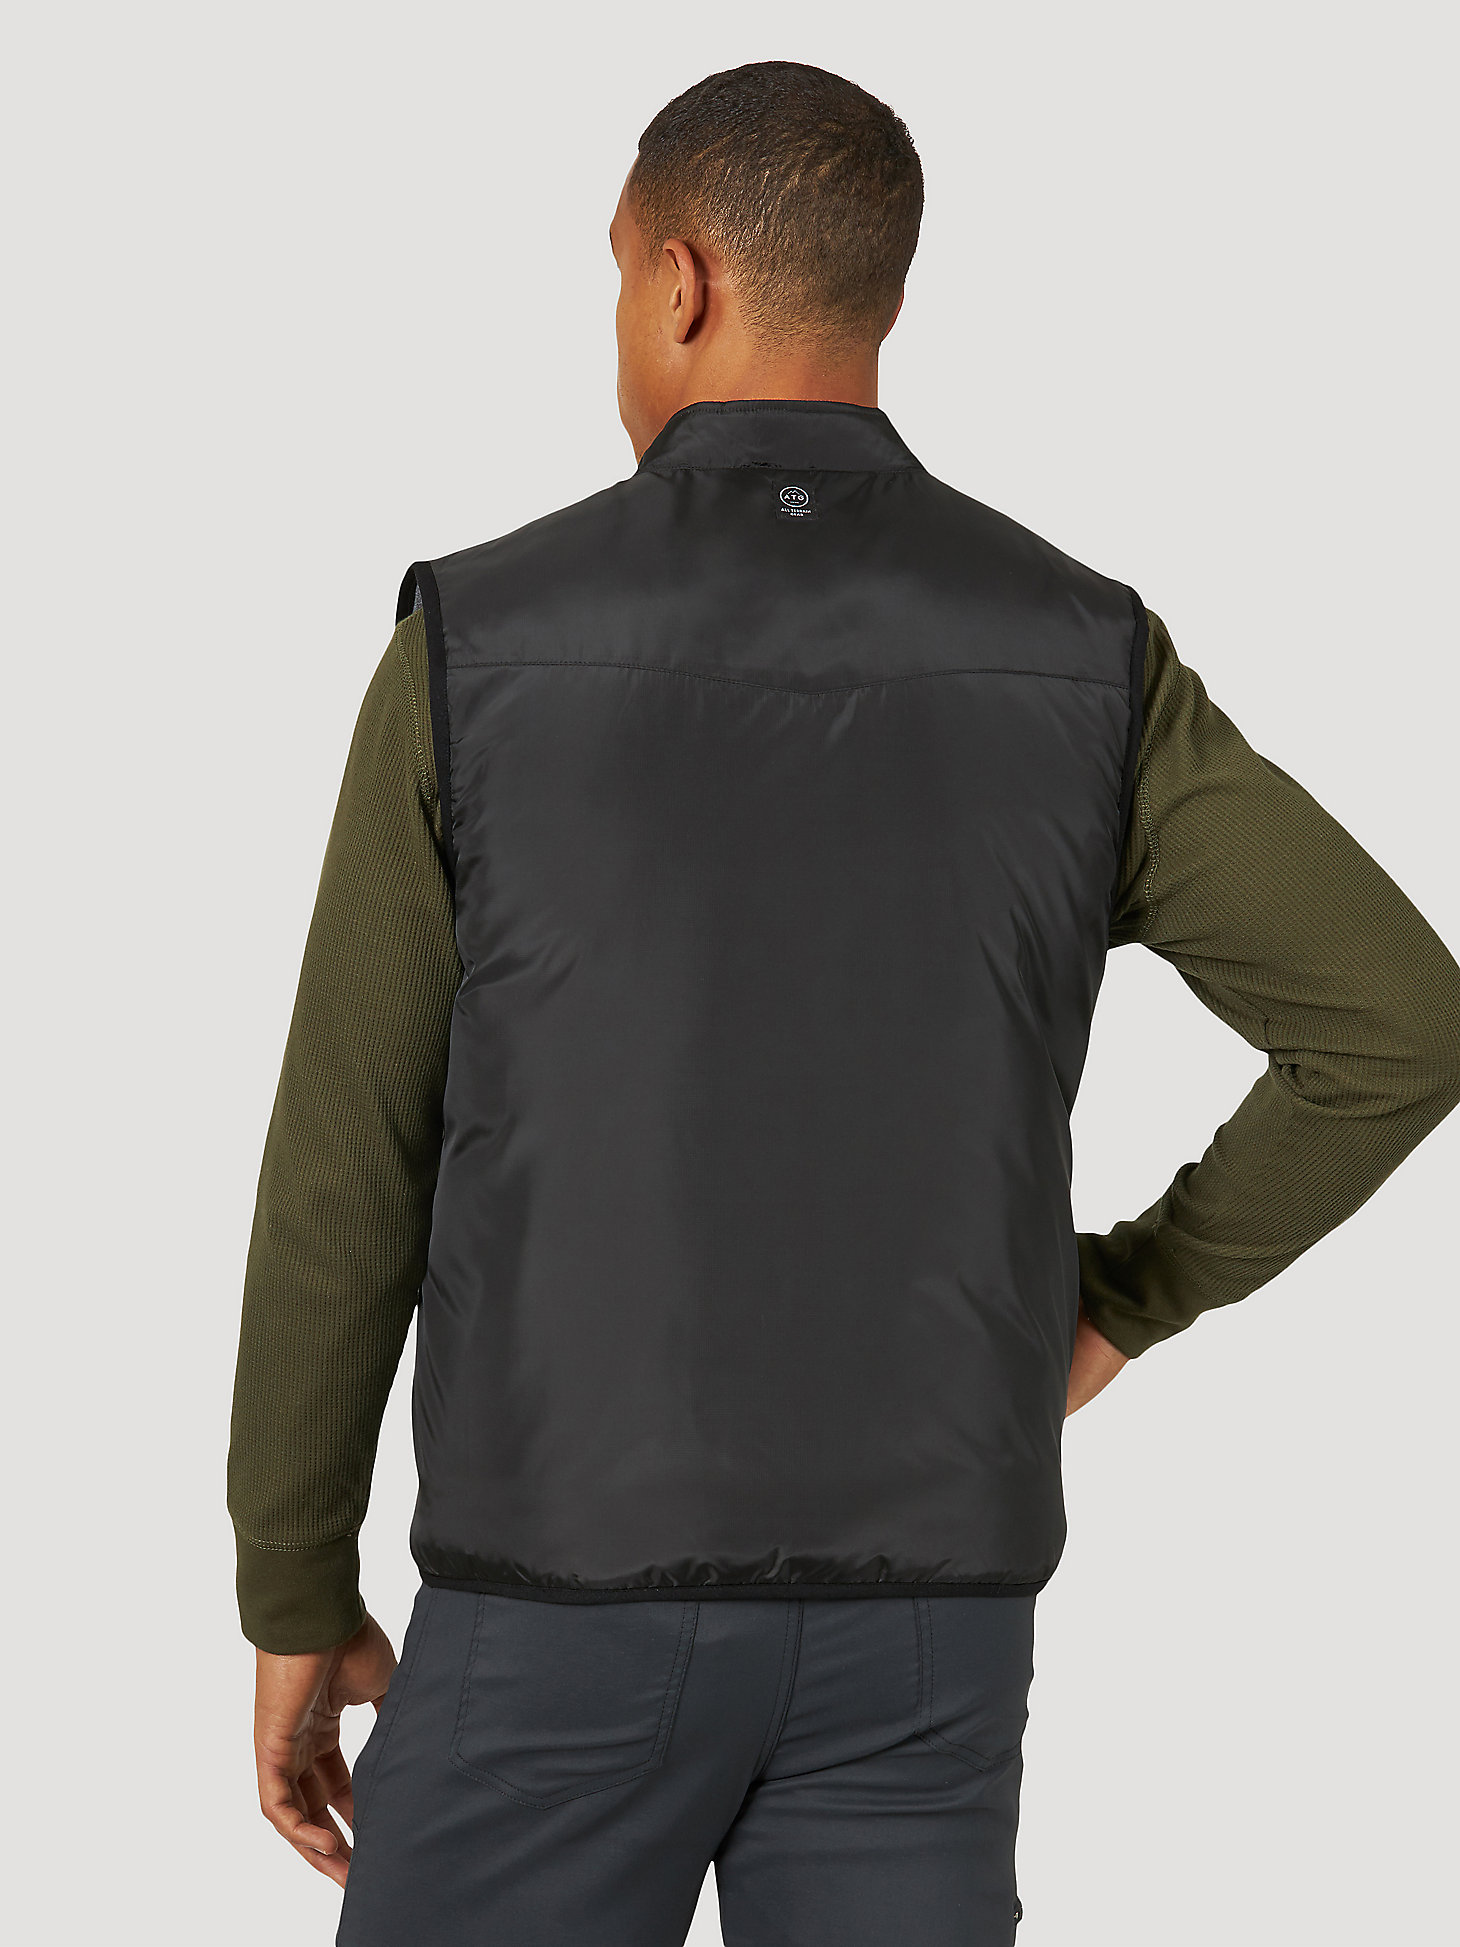 ATG by Wrangler Men's Reversible Classic Vest